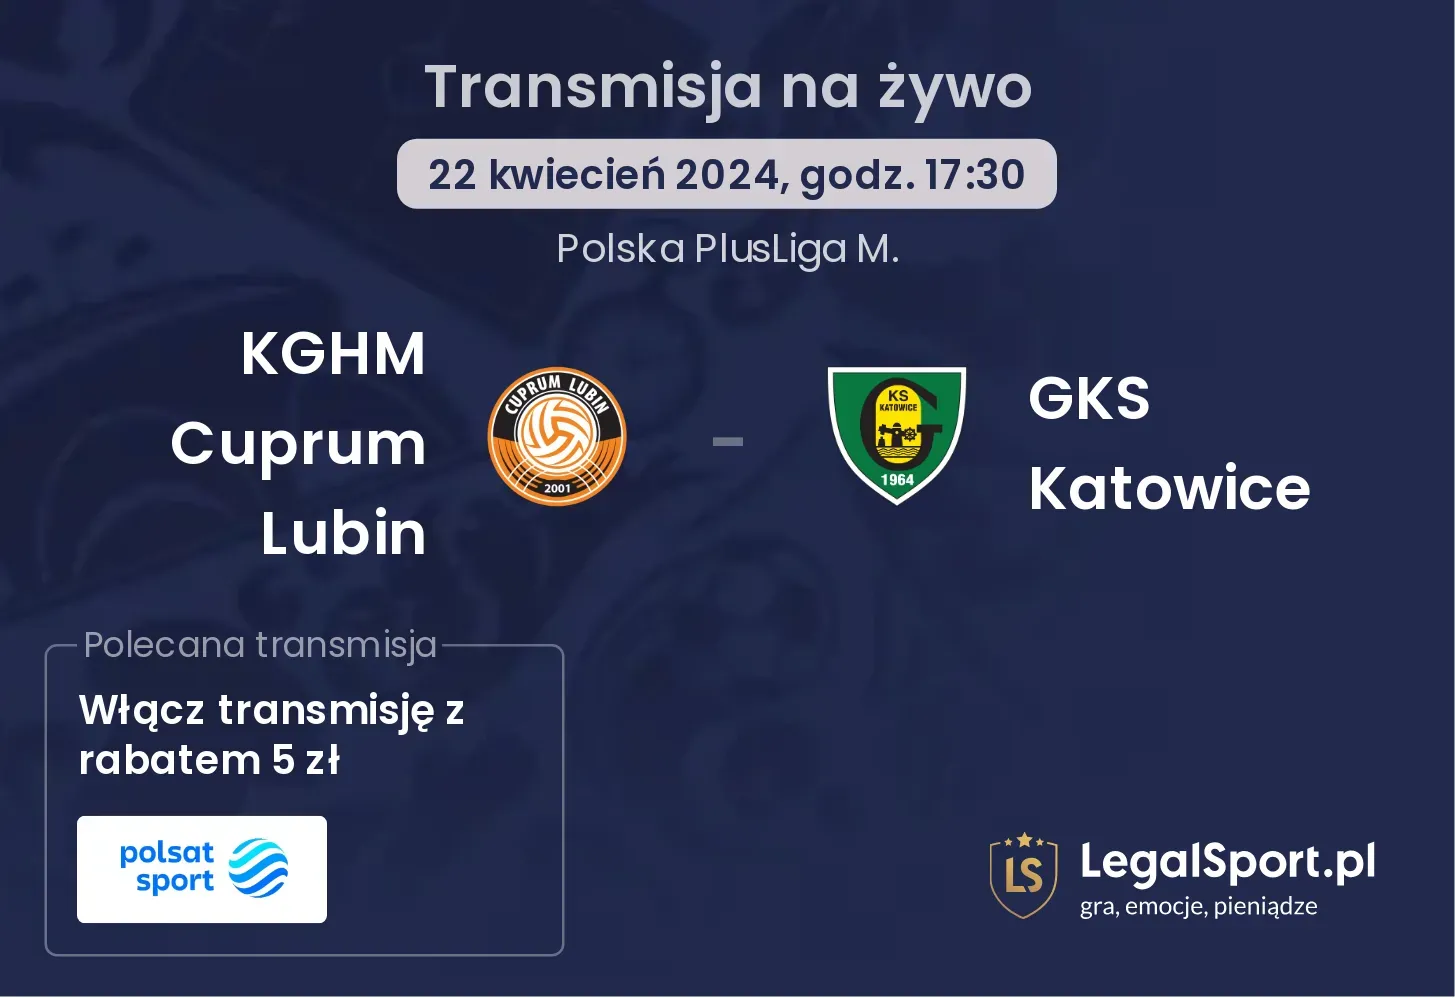 KGHM Cuprum Lubin - GKS Katowice transmisja na żywo